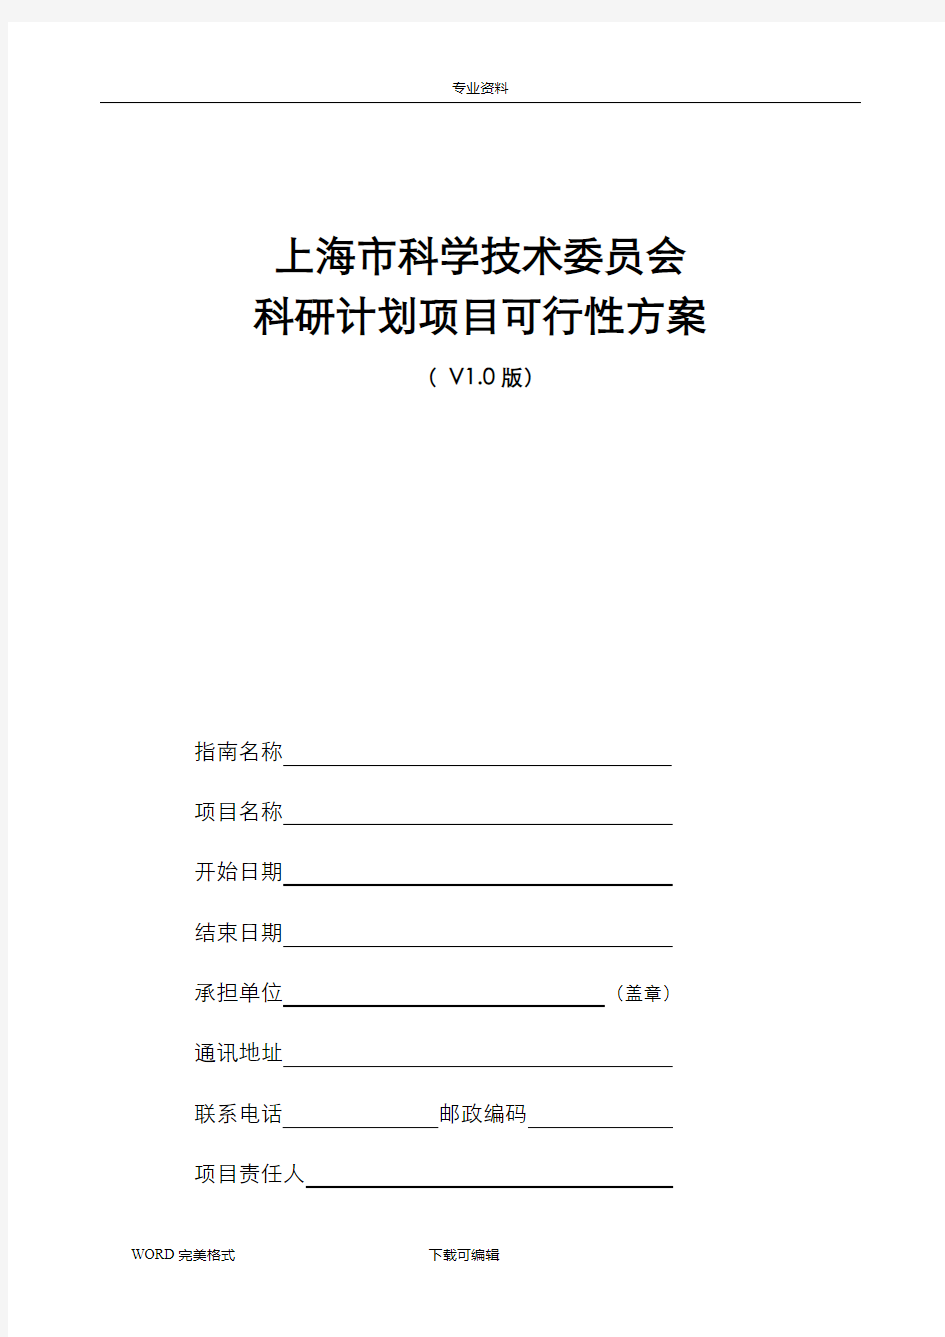 上海科学技术委员会科研计划项目可行性方案(V10版)